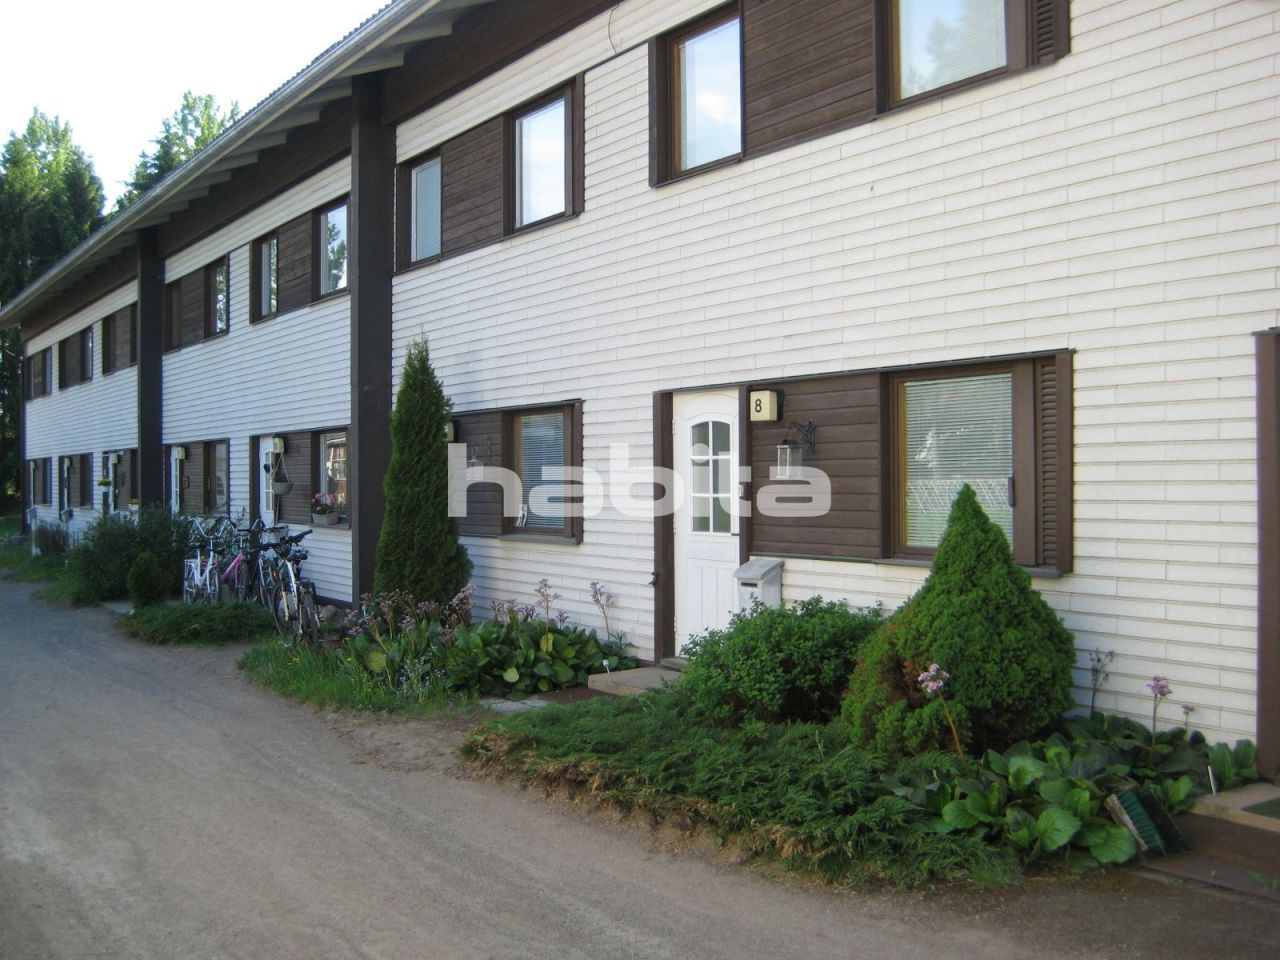 Квартира в Коуволе, Финляндия, 79 м2 - фото 1